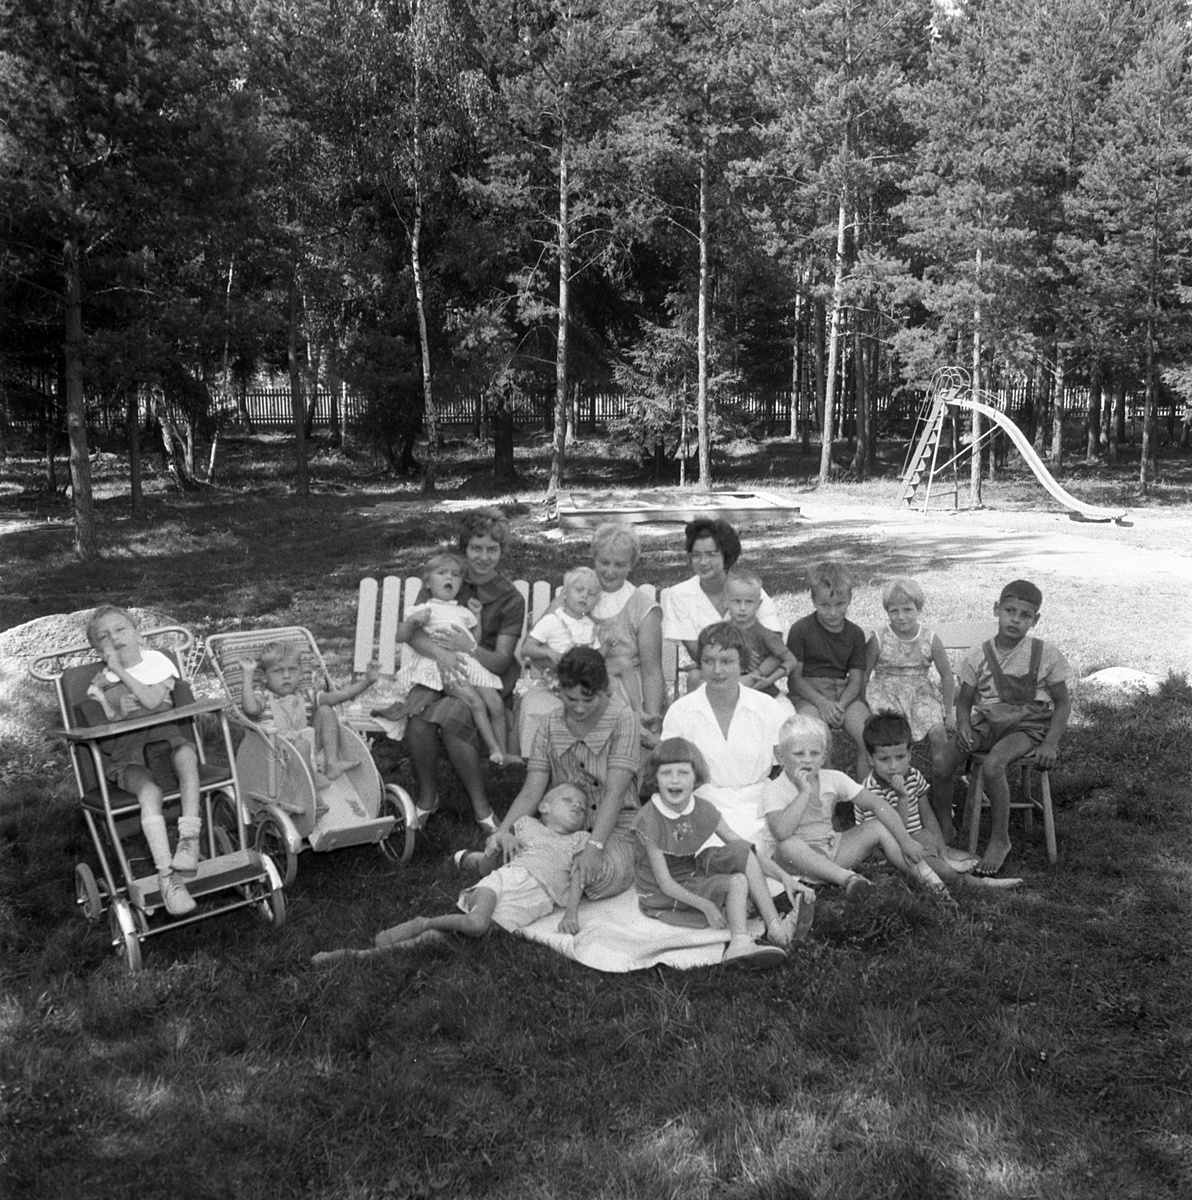 Solig sommardag vid Blåklintshemmet i Linköping 1959. Vårdhemmet hade tagits i bruk år 1935 som ett konvalescenthem för barn och drevs av FÖB (Föreningen för Östergötlands Barn). Hemmet hade plats för 10 större barn men så småningom övergick huset till att bli spädbarnshem, innan FÖB år 1953 överlämnade byggnaden till landstinget som gåva.